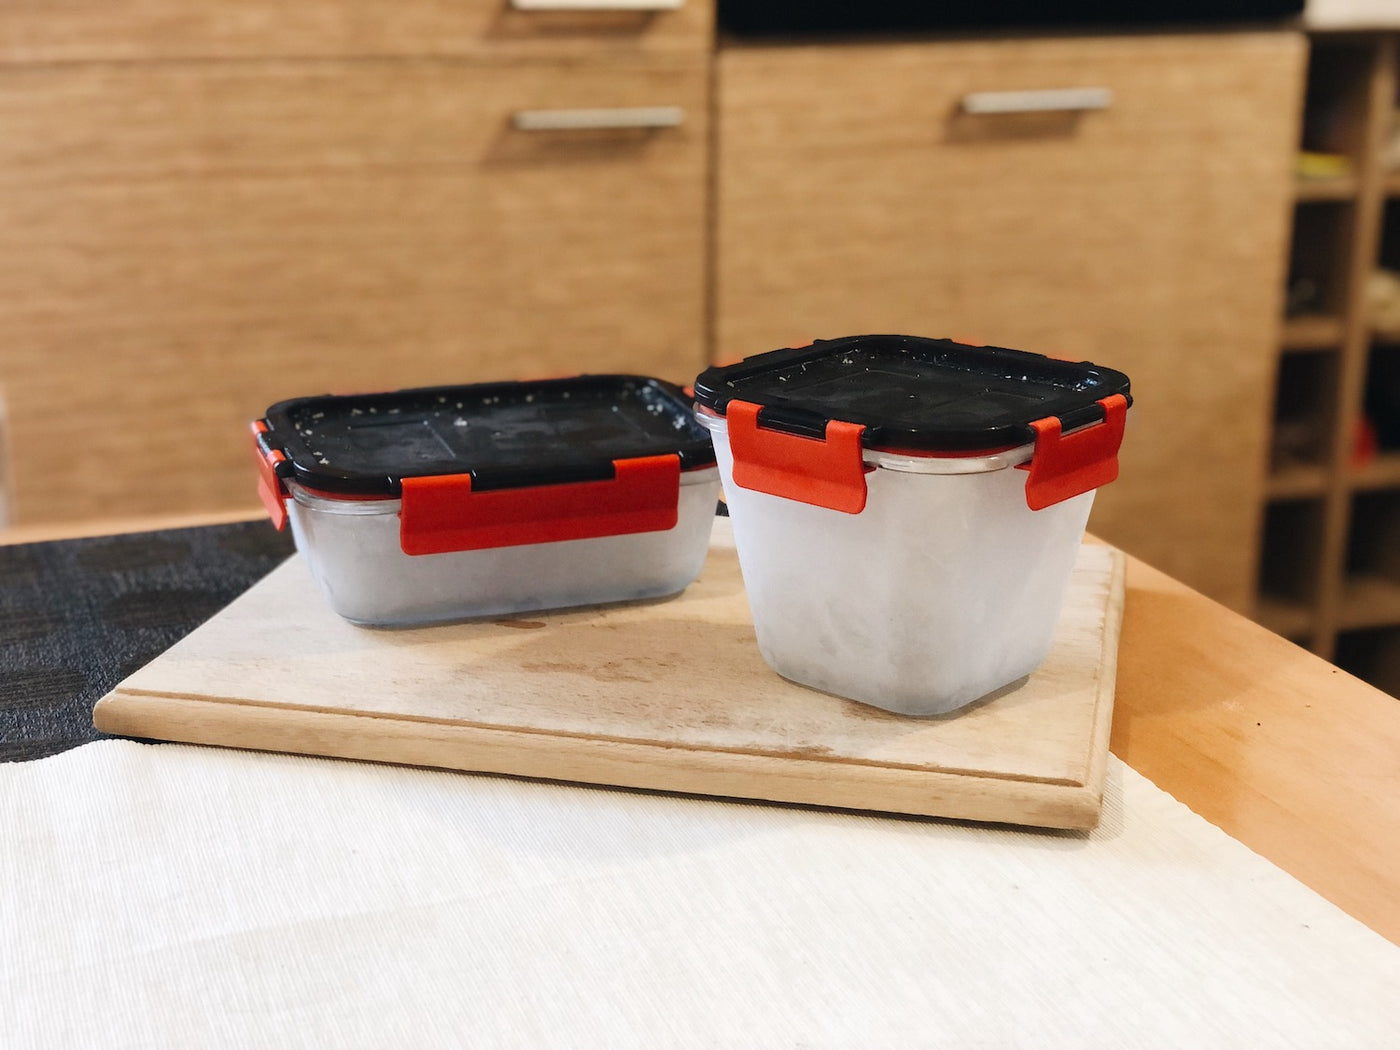 Skleněné boxy na potraviny Simax Klik-klak na dřevěném prkně v kuchyni